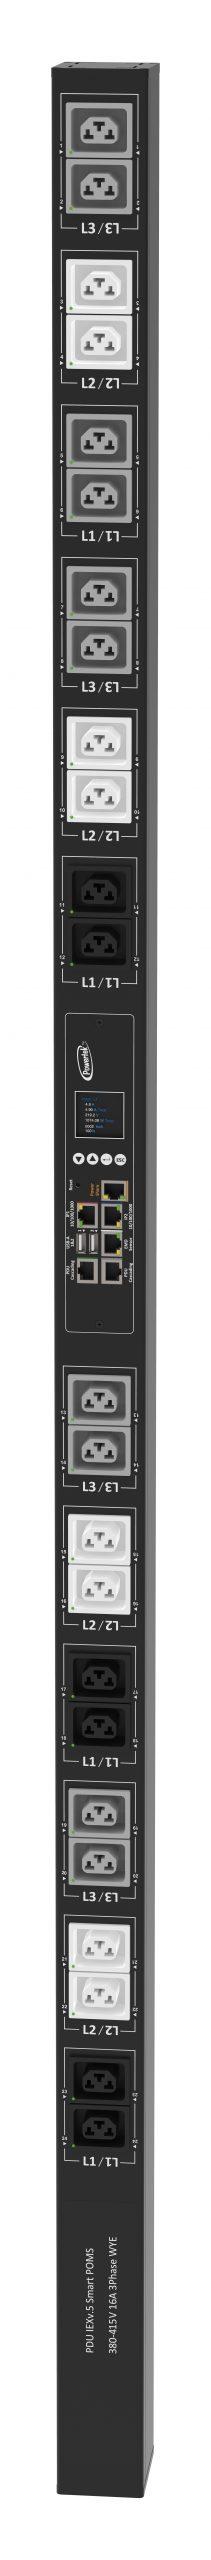 Powertek Intelligent PDU 380-415V, 3 fase, 16amp, låsning af power kabler C13/C19 kombination i samme udtag, 24 udtag redundant netværks mulighed, OLED display, overvågning af  sikringer